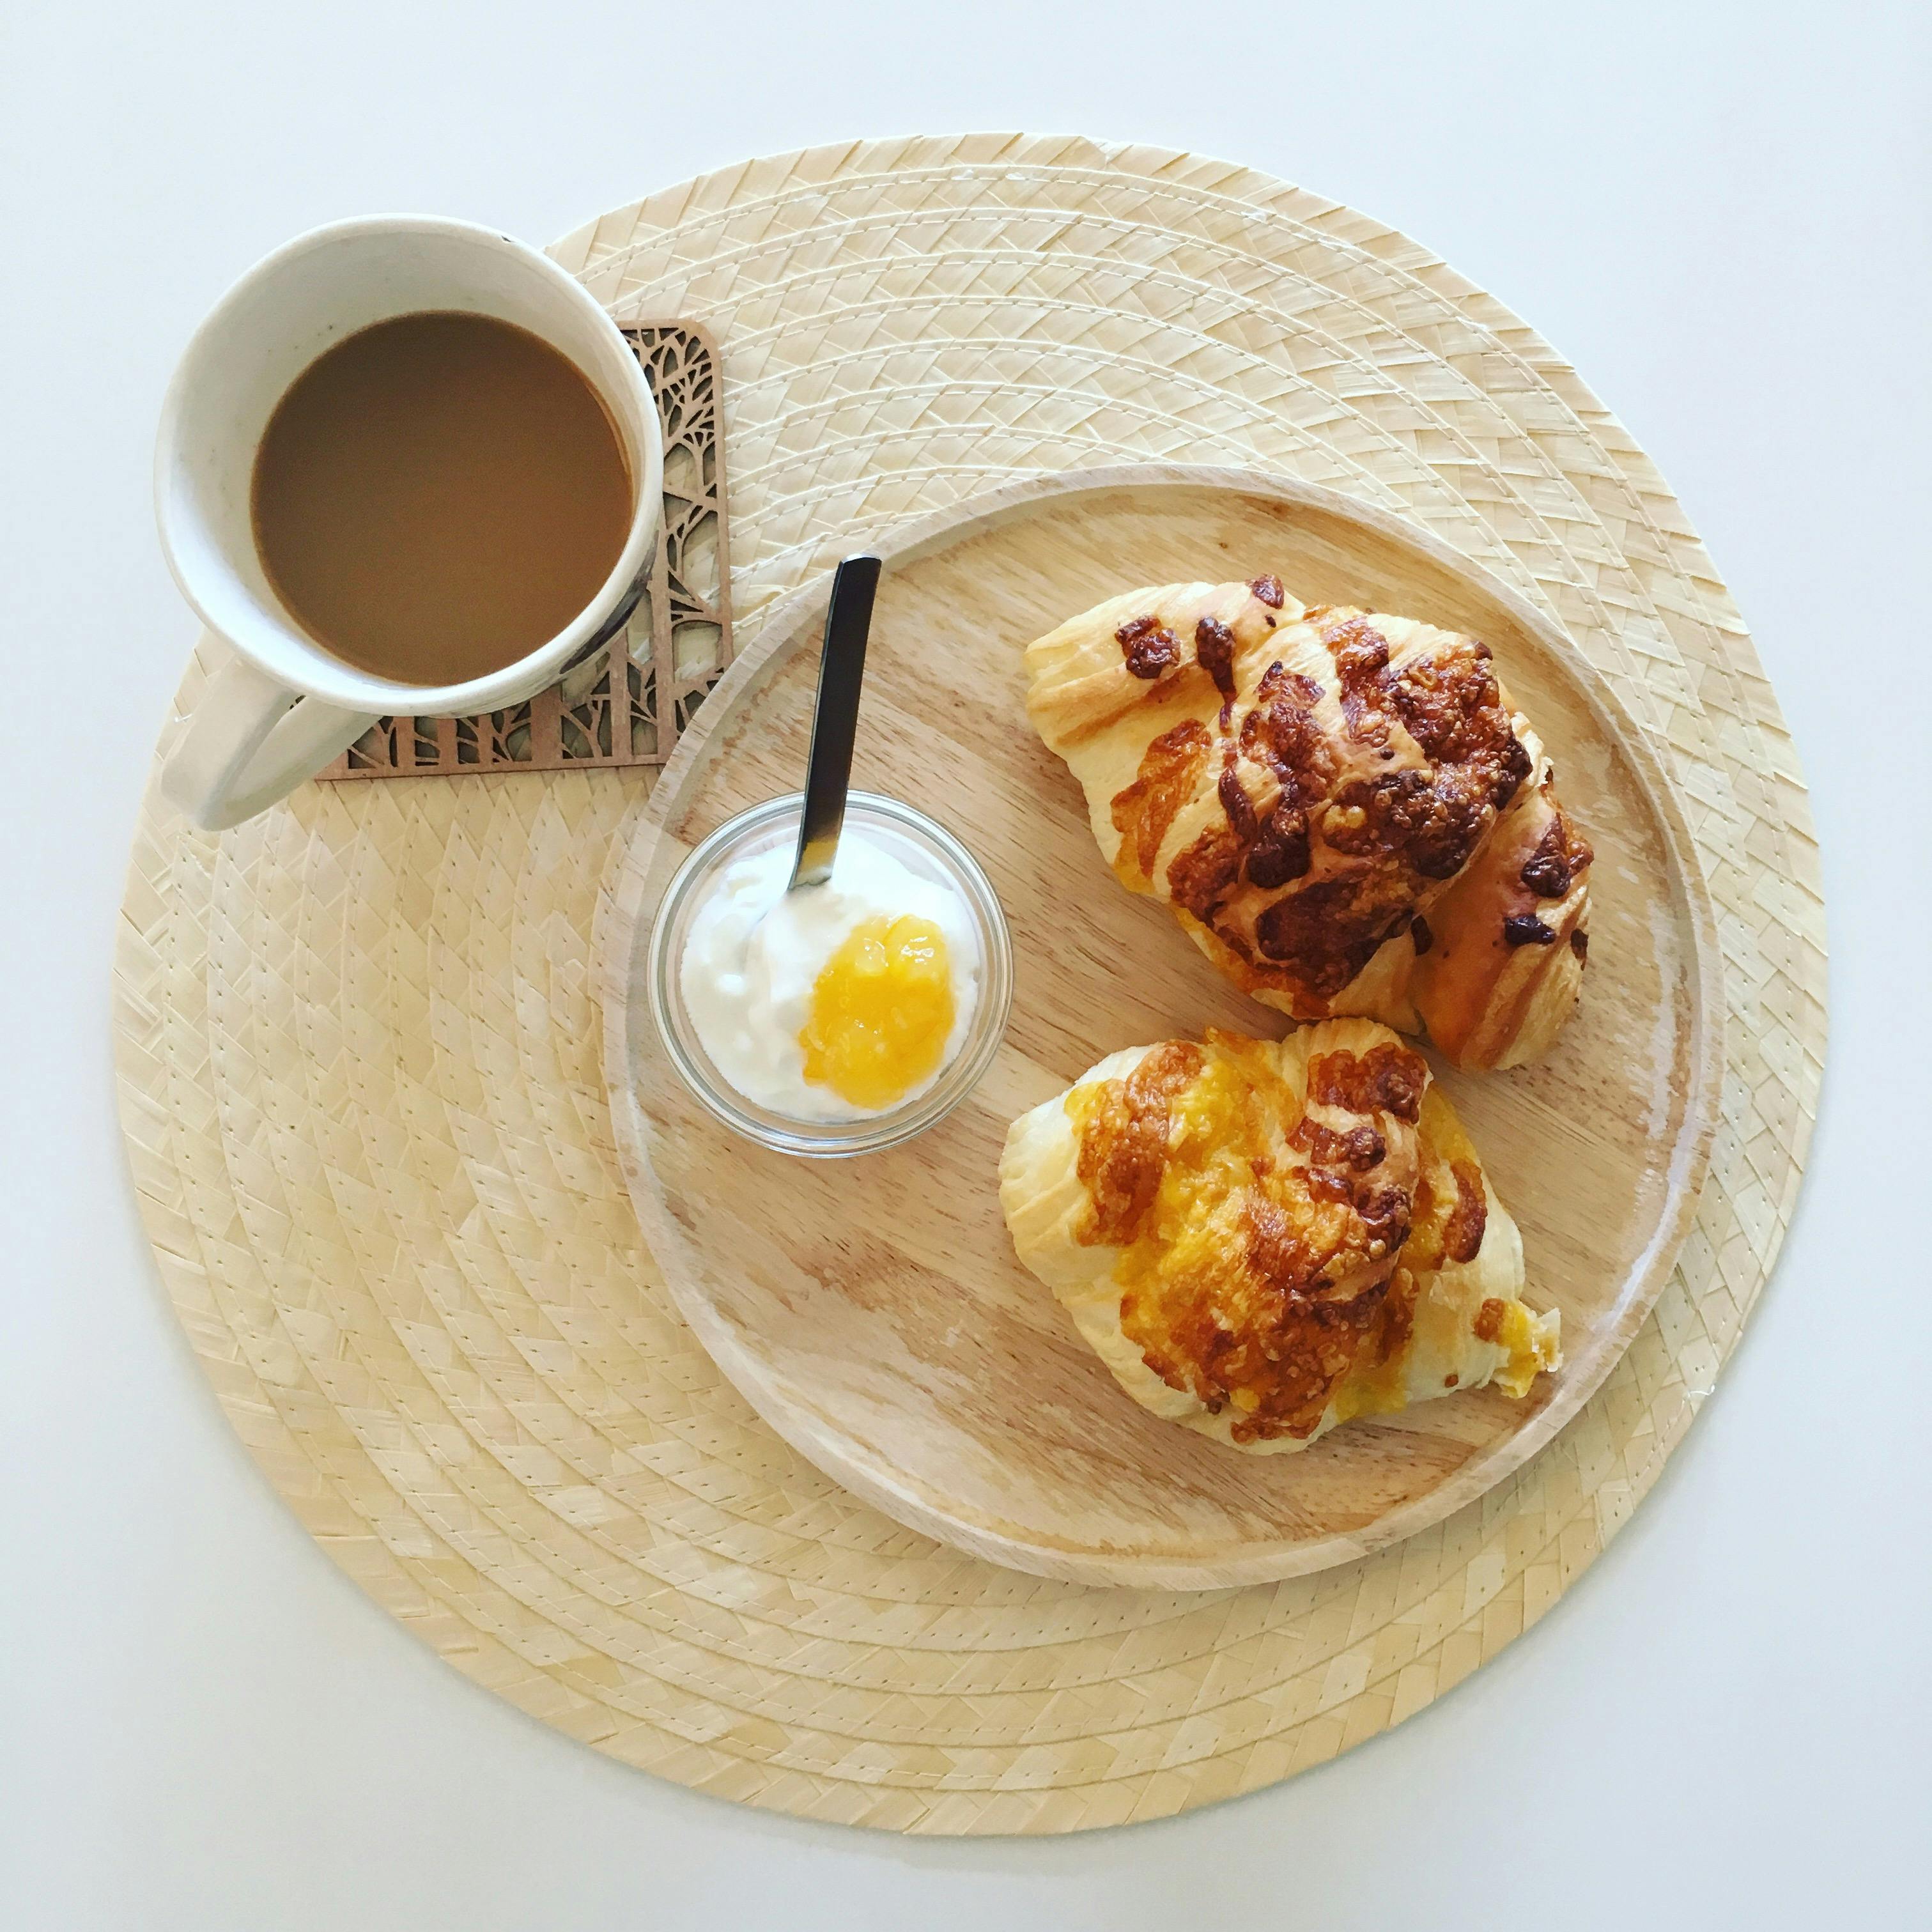 Tazas Desayuno Café Buenos - Foto gratis en Pixabay - Pixabay